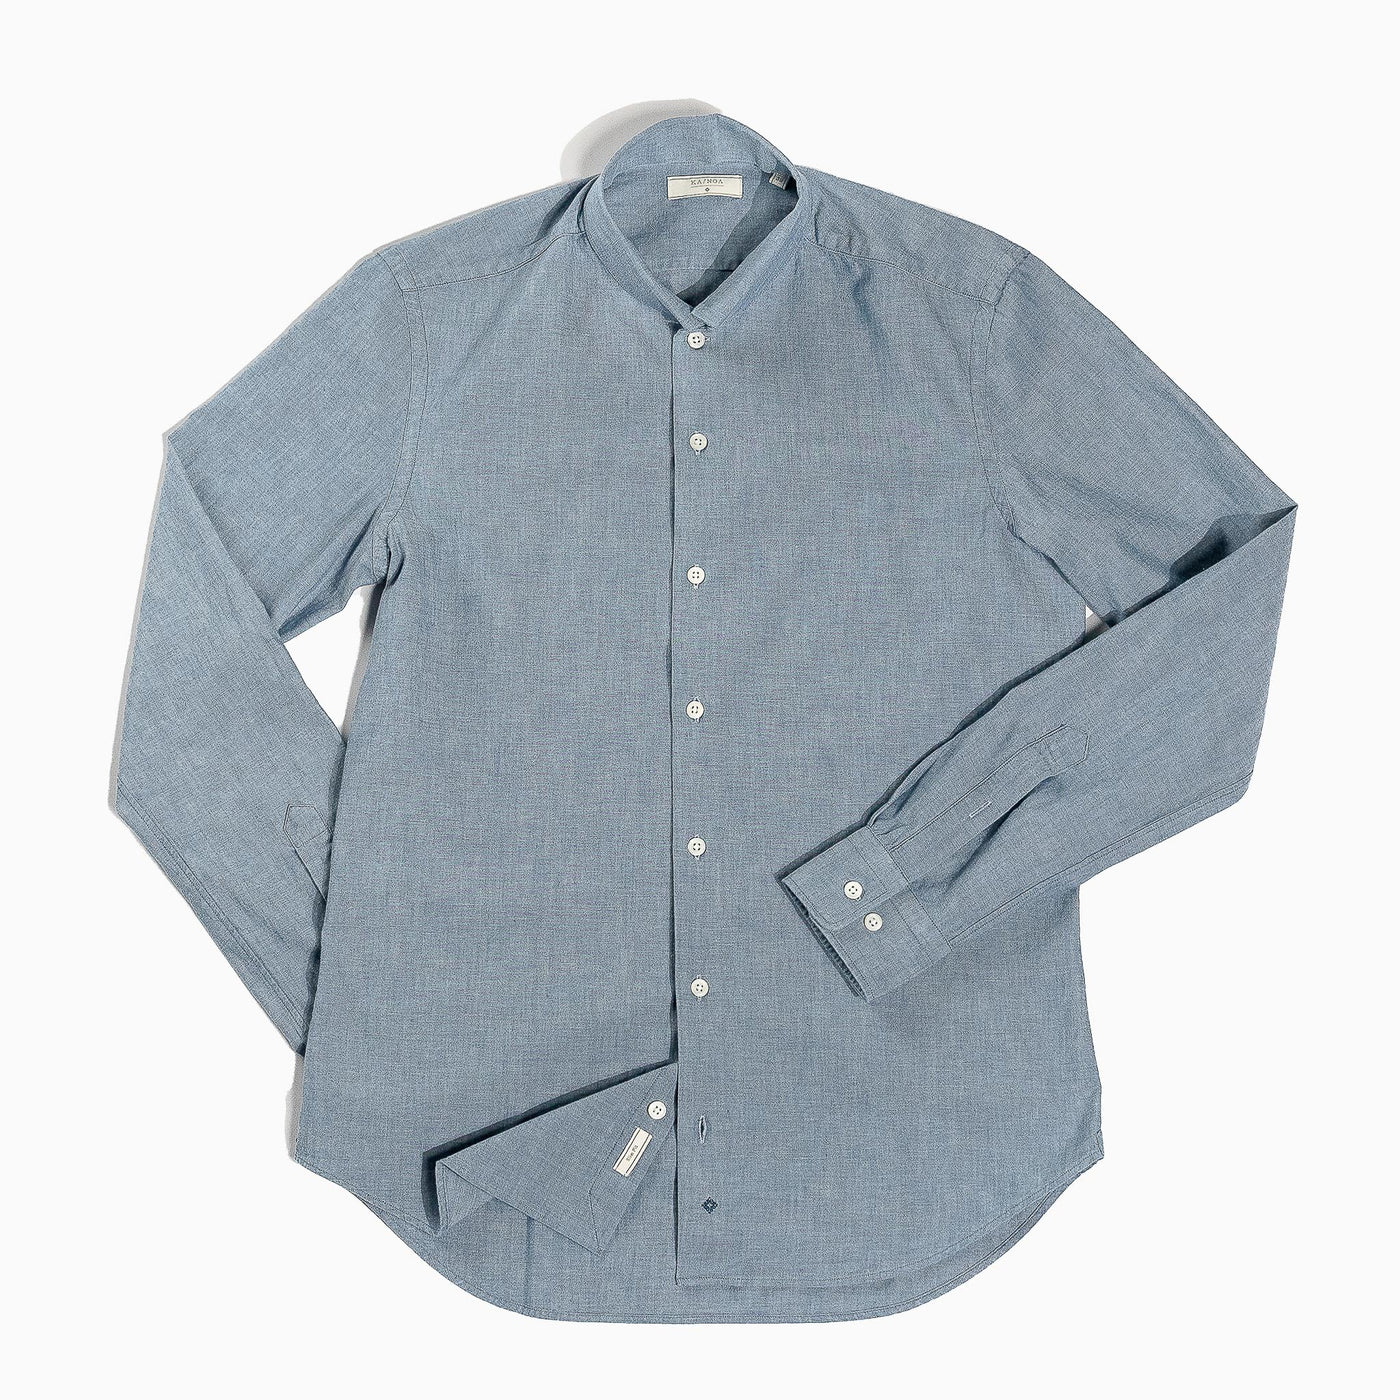 Conrad cotton shirt indigo chambray